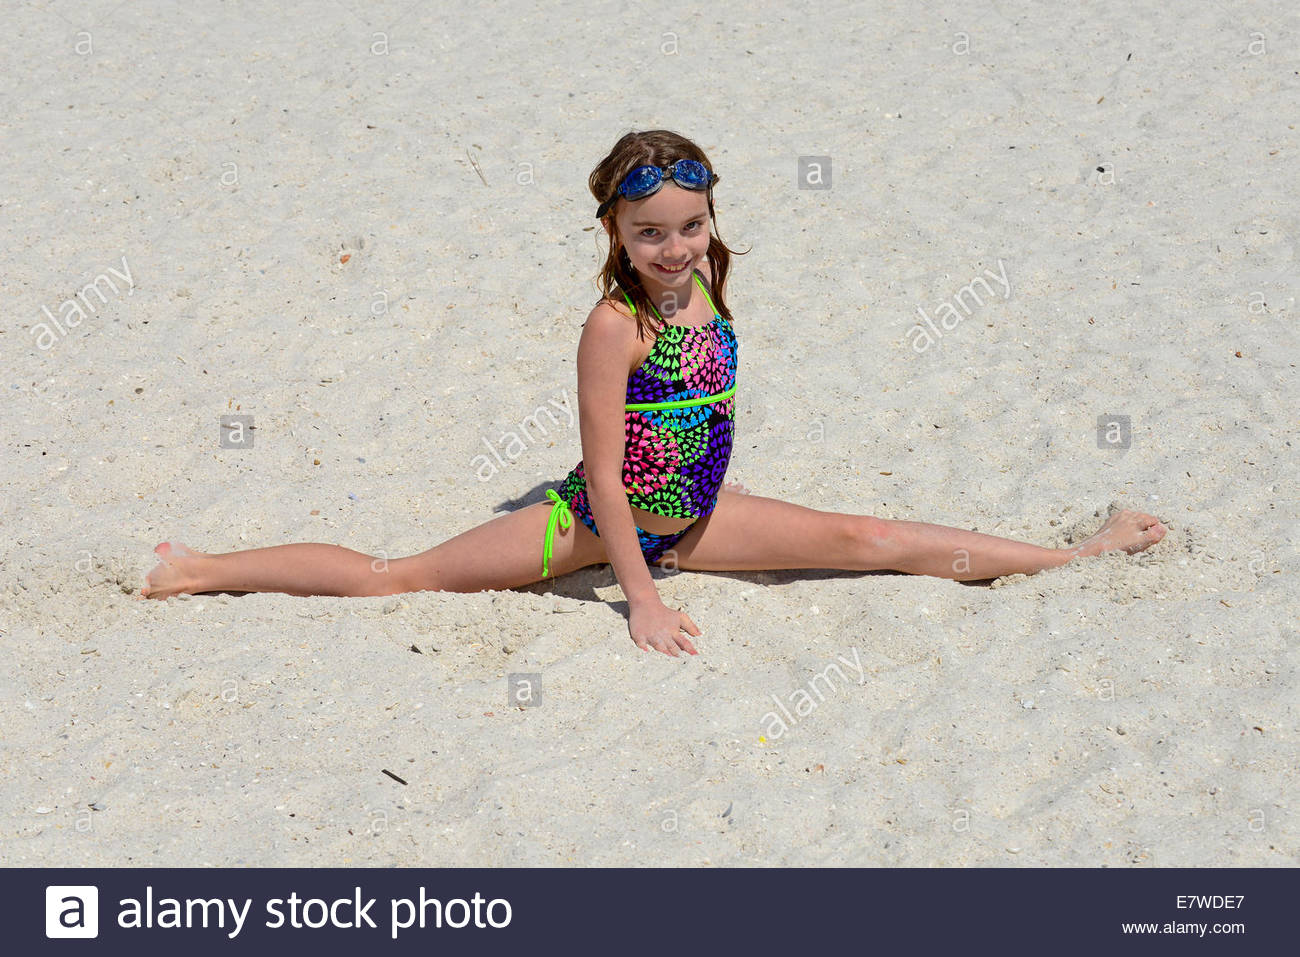 Girls doing splits in shorts